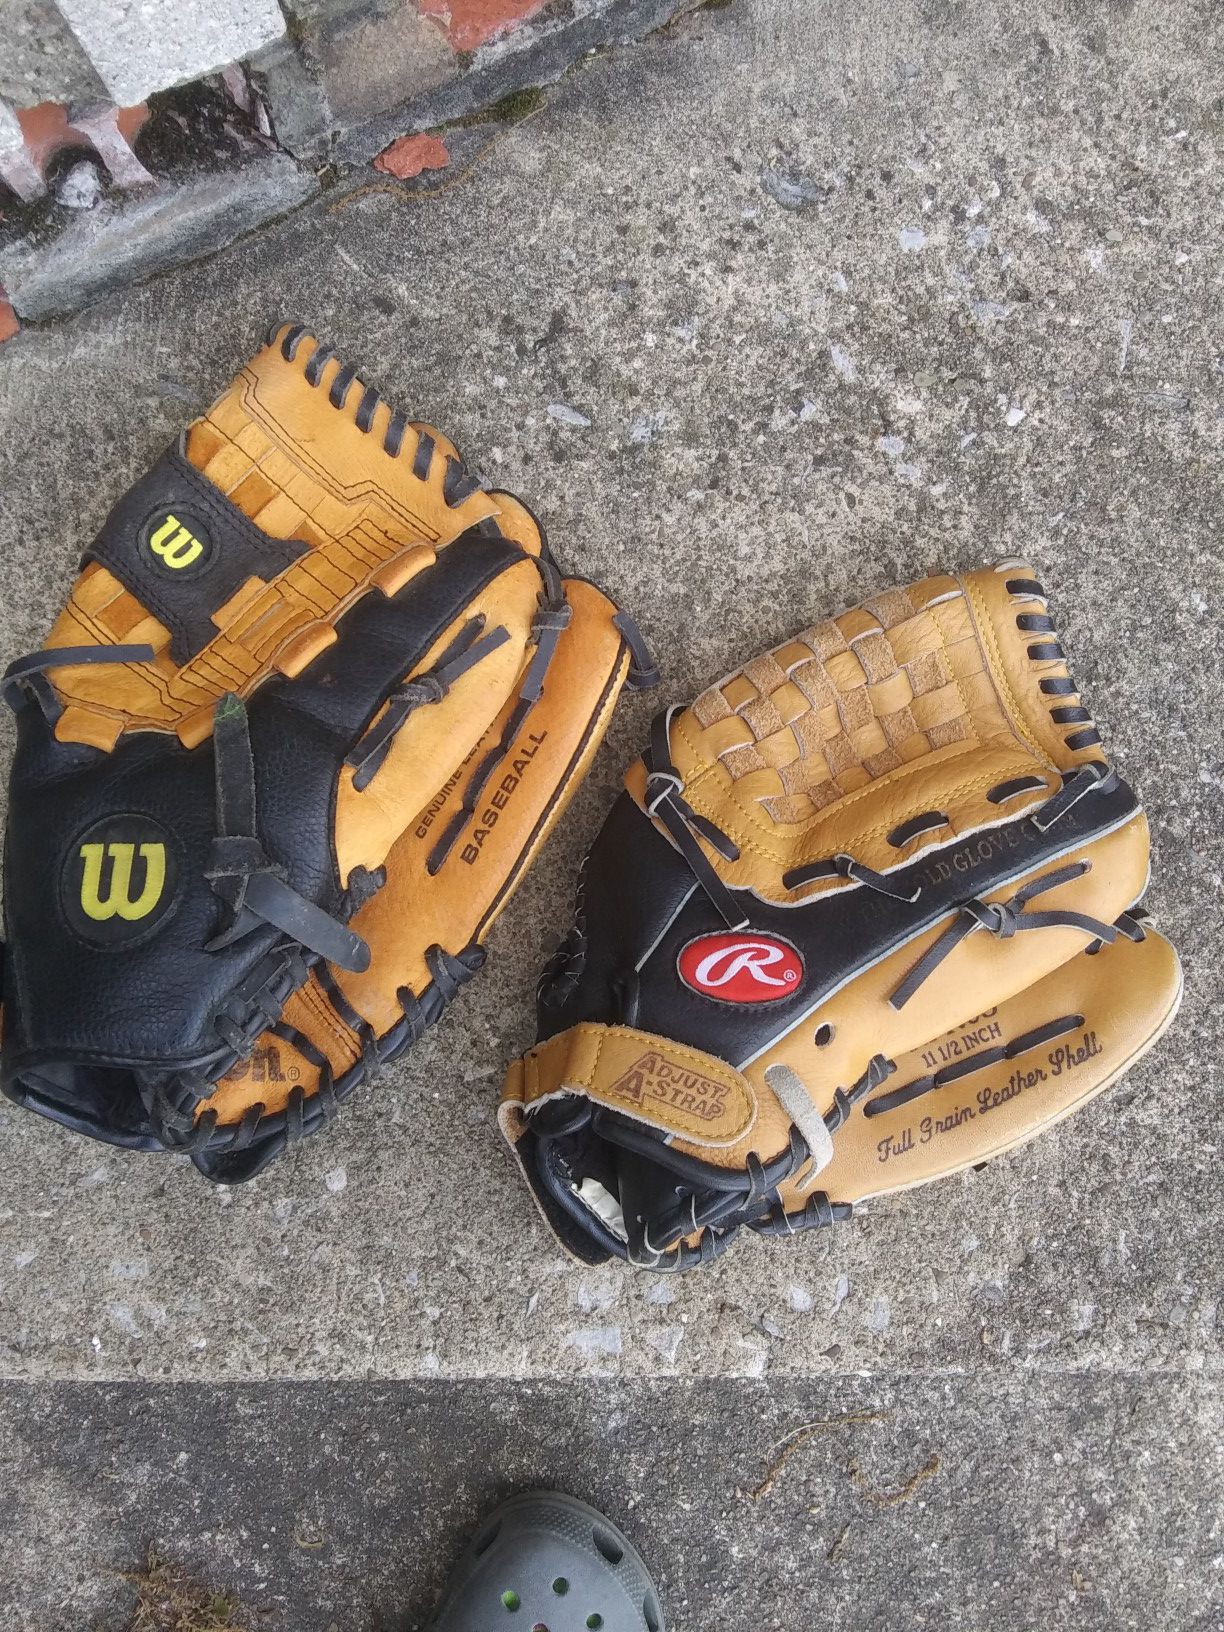 2 Baseball Gloves & 3 Baseballs